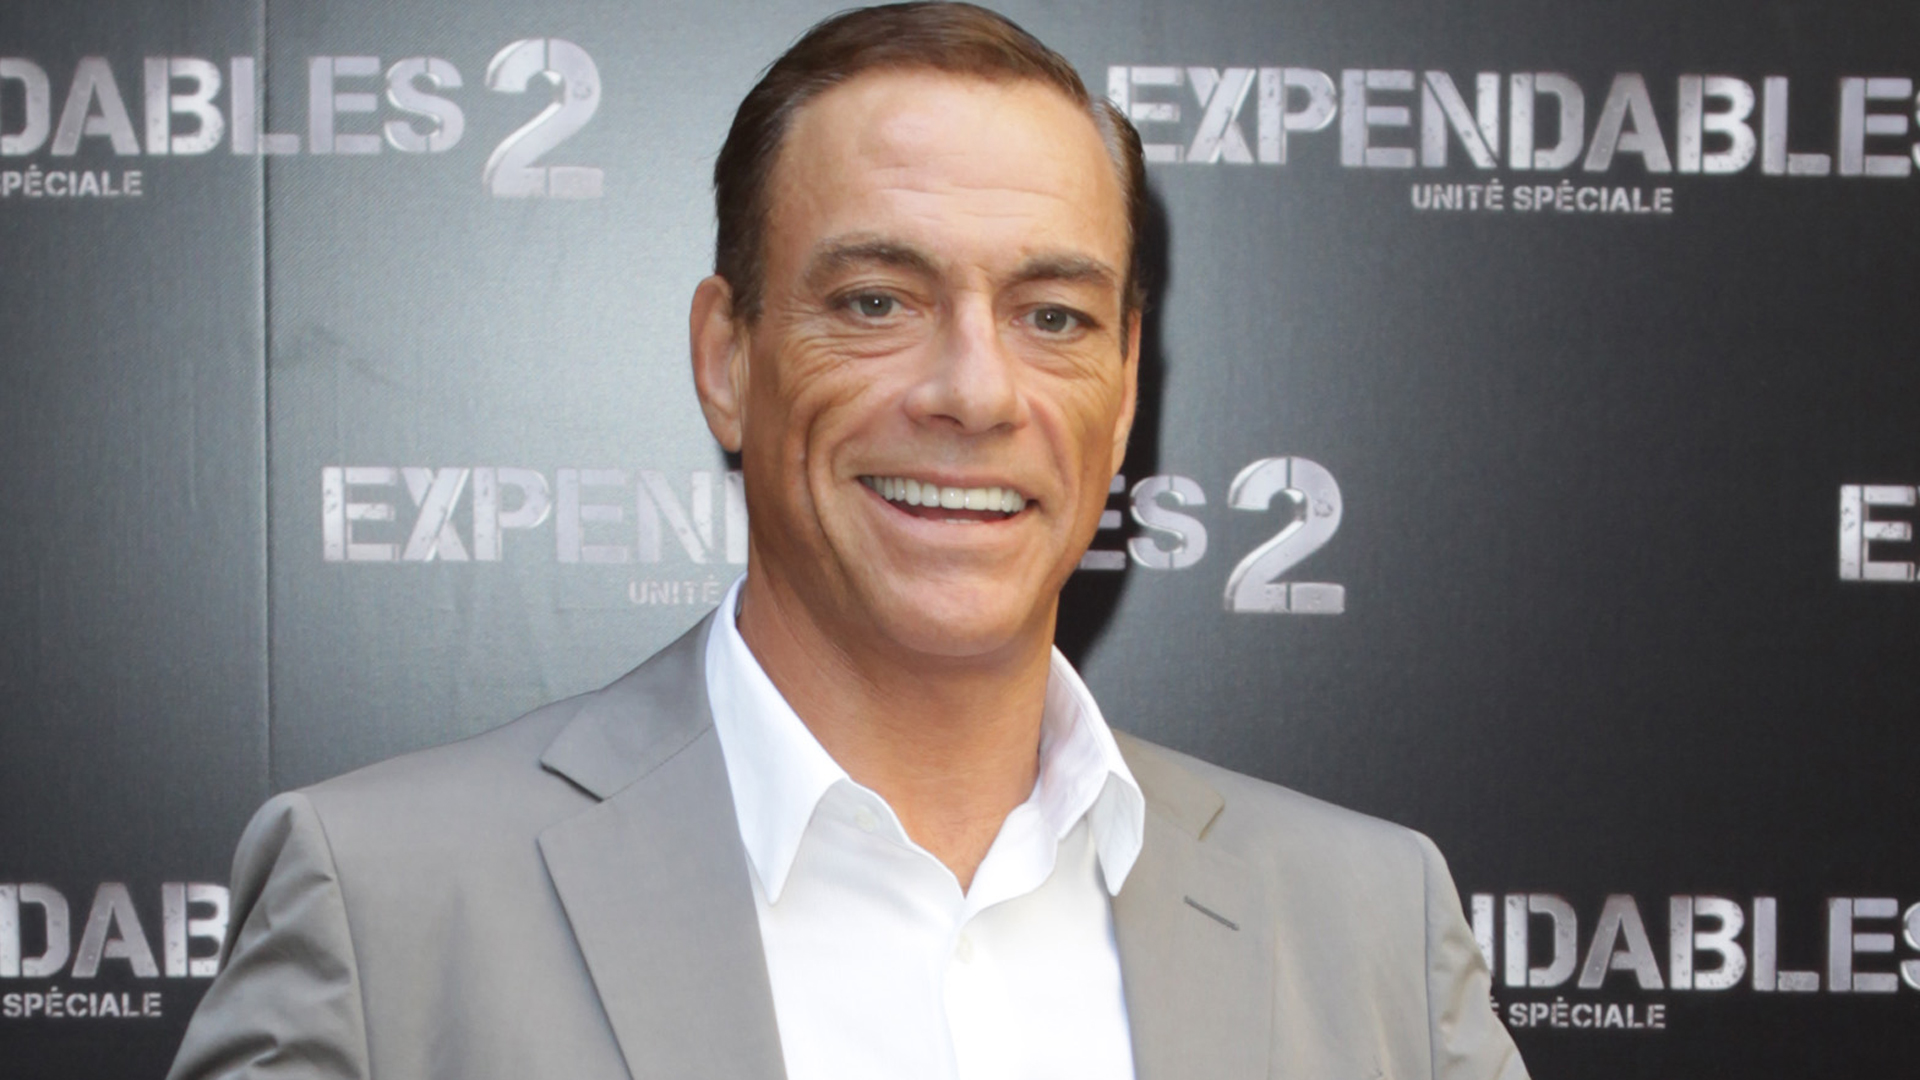 Jean-claude Van Damme - Jean Claude Van Damme , HD Wallpaper & Backgrounds